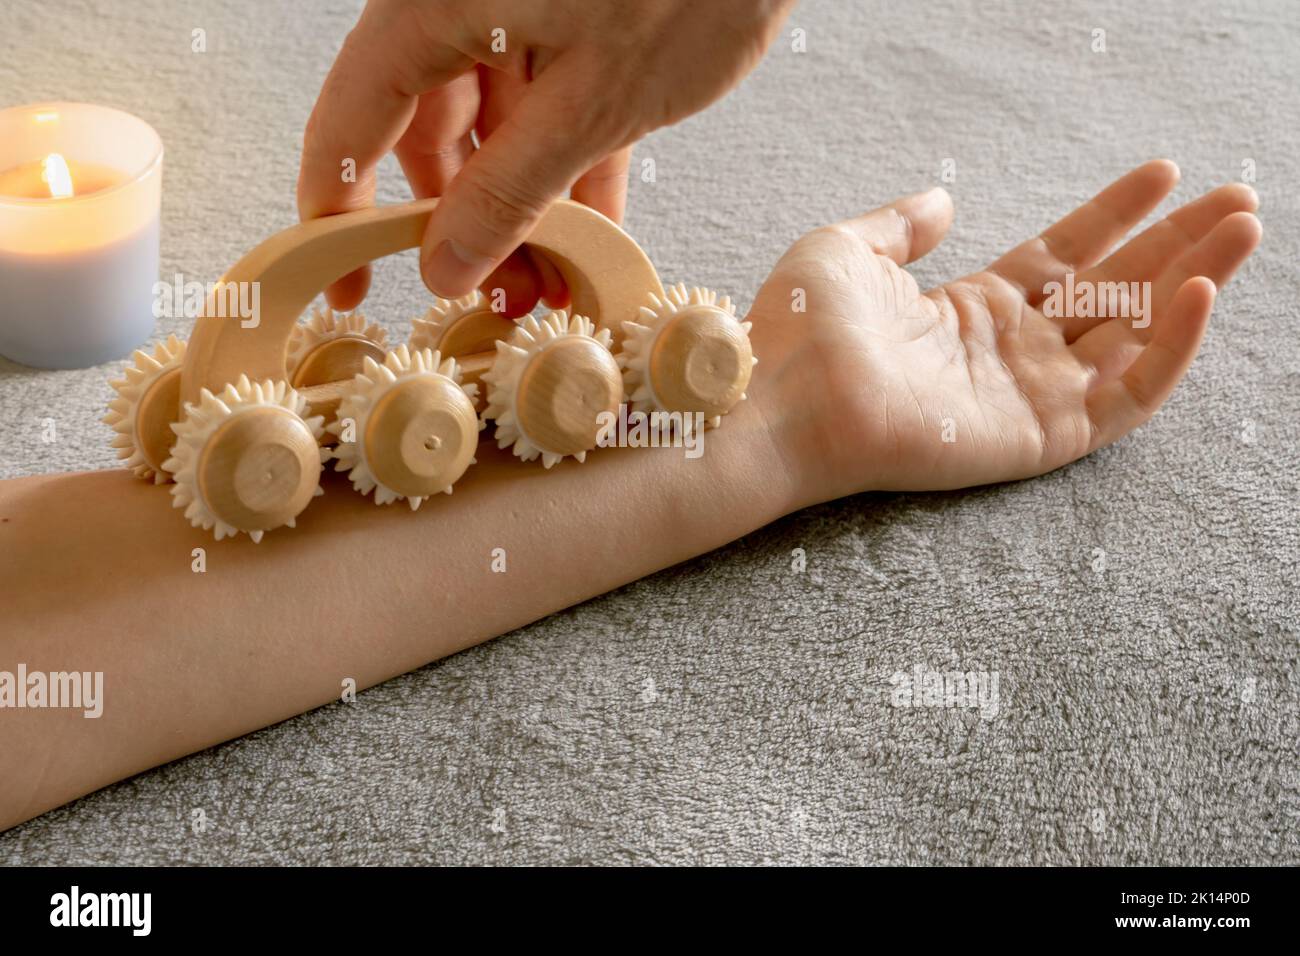 Die Frau erhält eine entspannende Massage, um die Lymphdrainage und den Blutfluss in einer gemütlichen Umgebung zu stimulieren Stockfoto